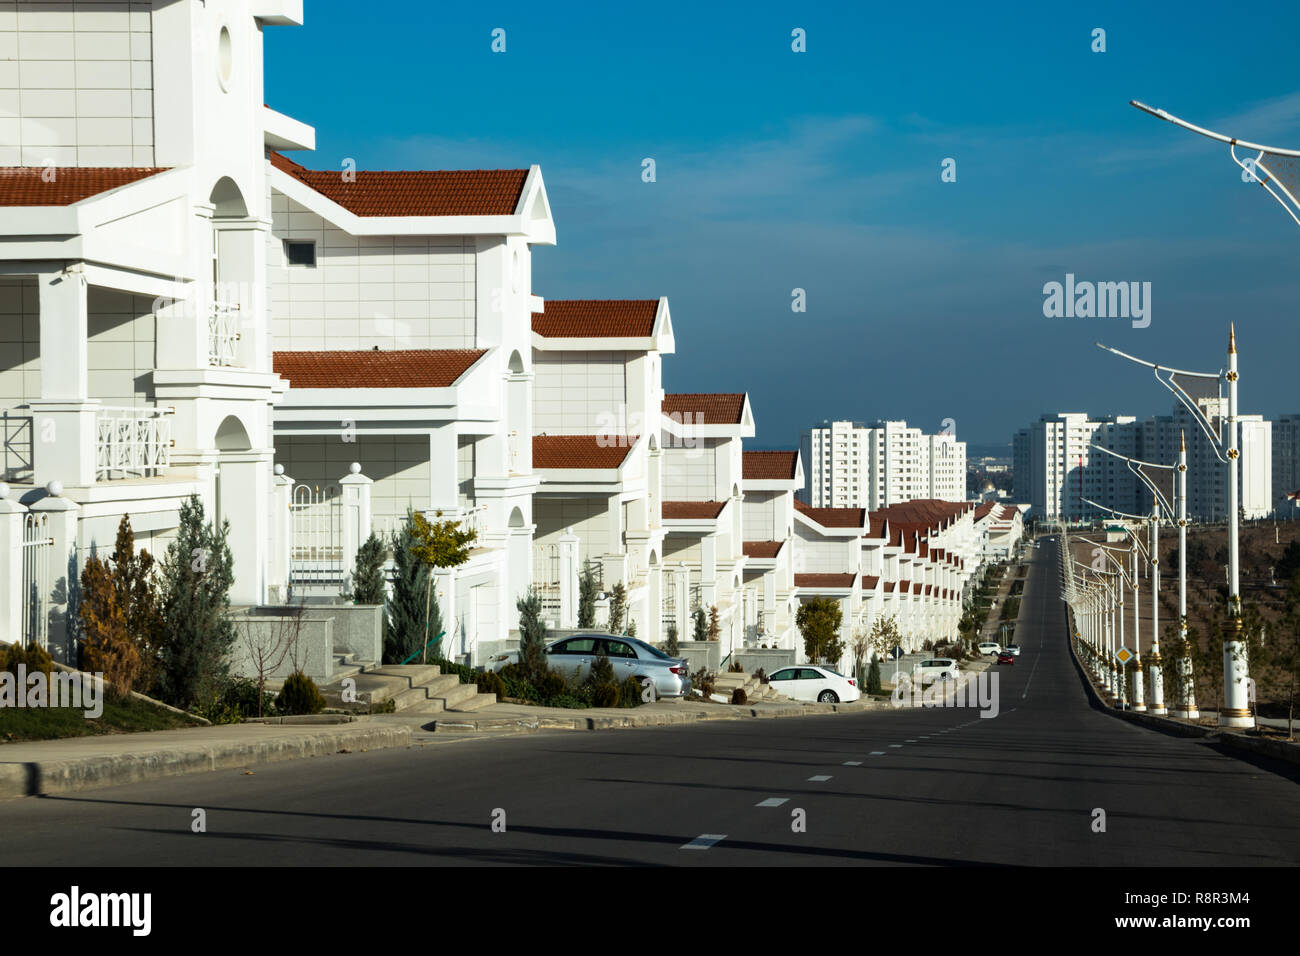 Quartier résidentiel, villa blanche avec toits rouges sur fond de ciel bleu nuageux. L'immobilier et des biens Banque D'Images